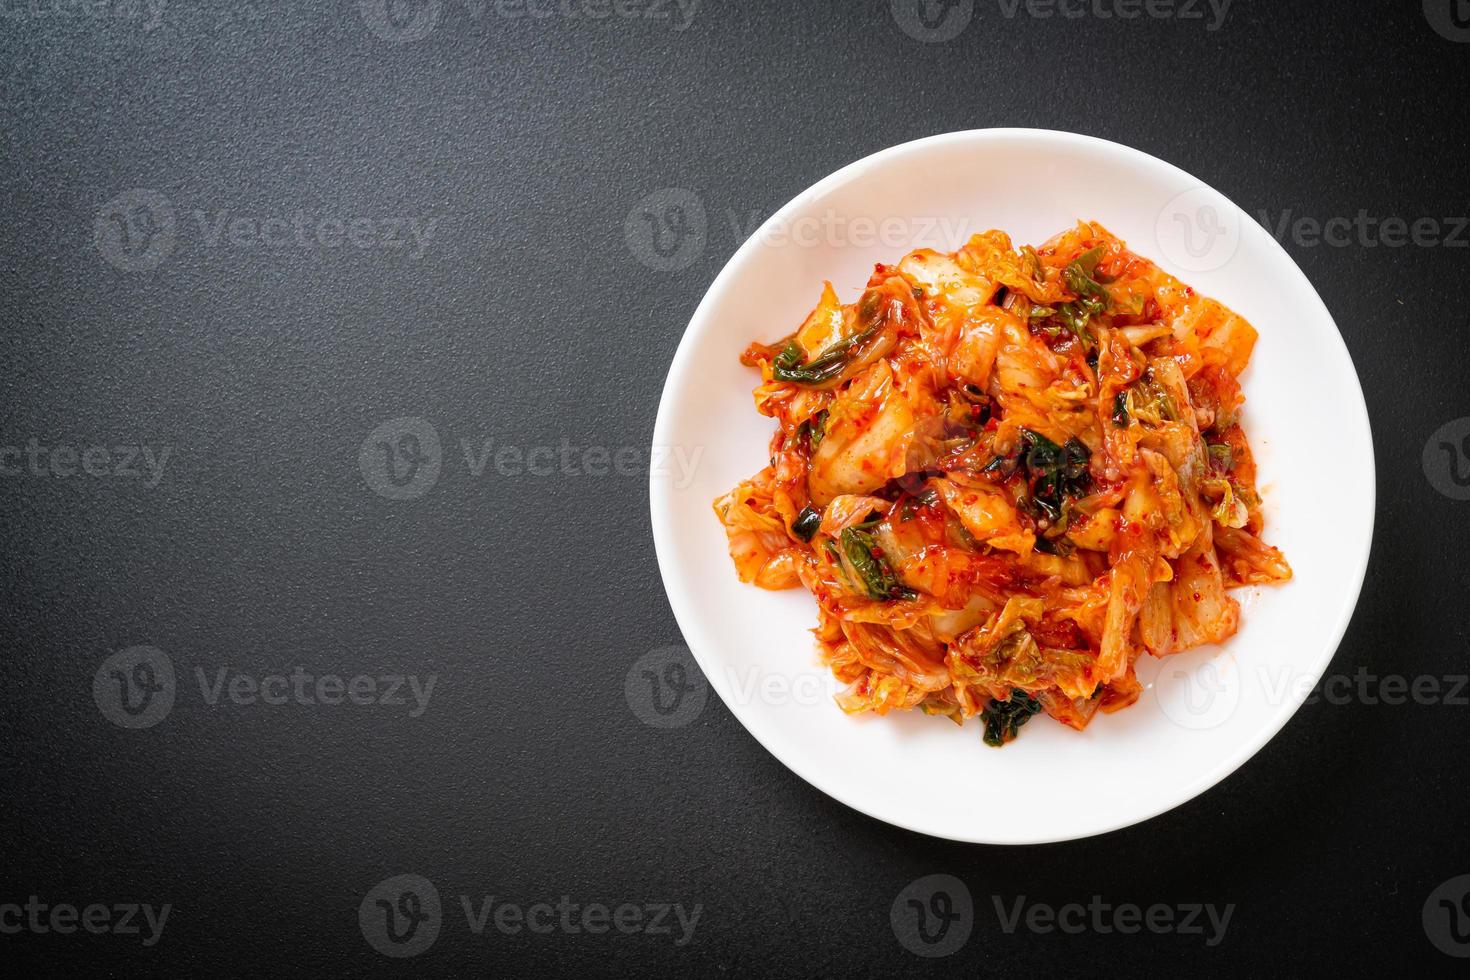 kimchi-kål på tallriken foto